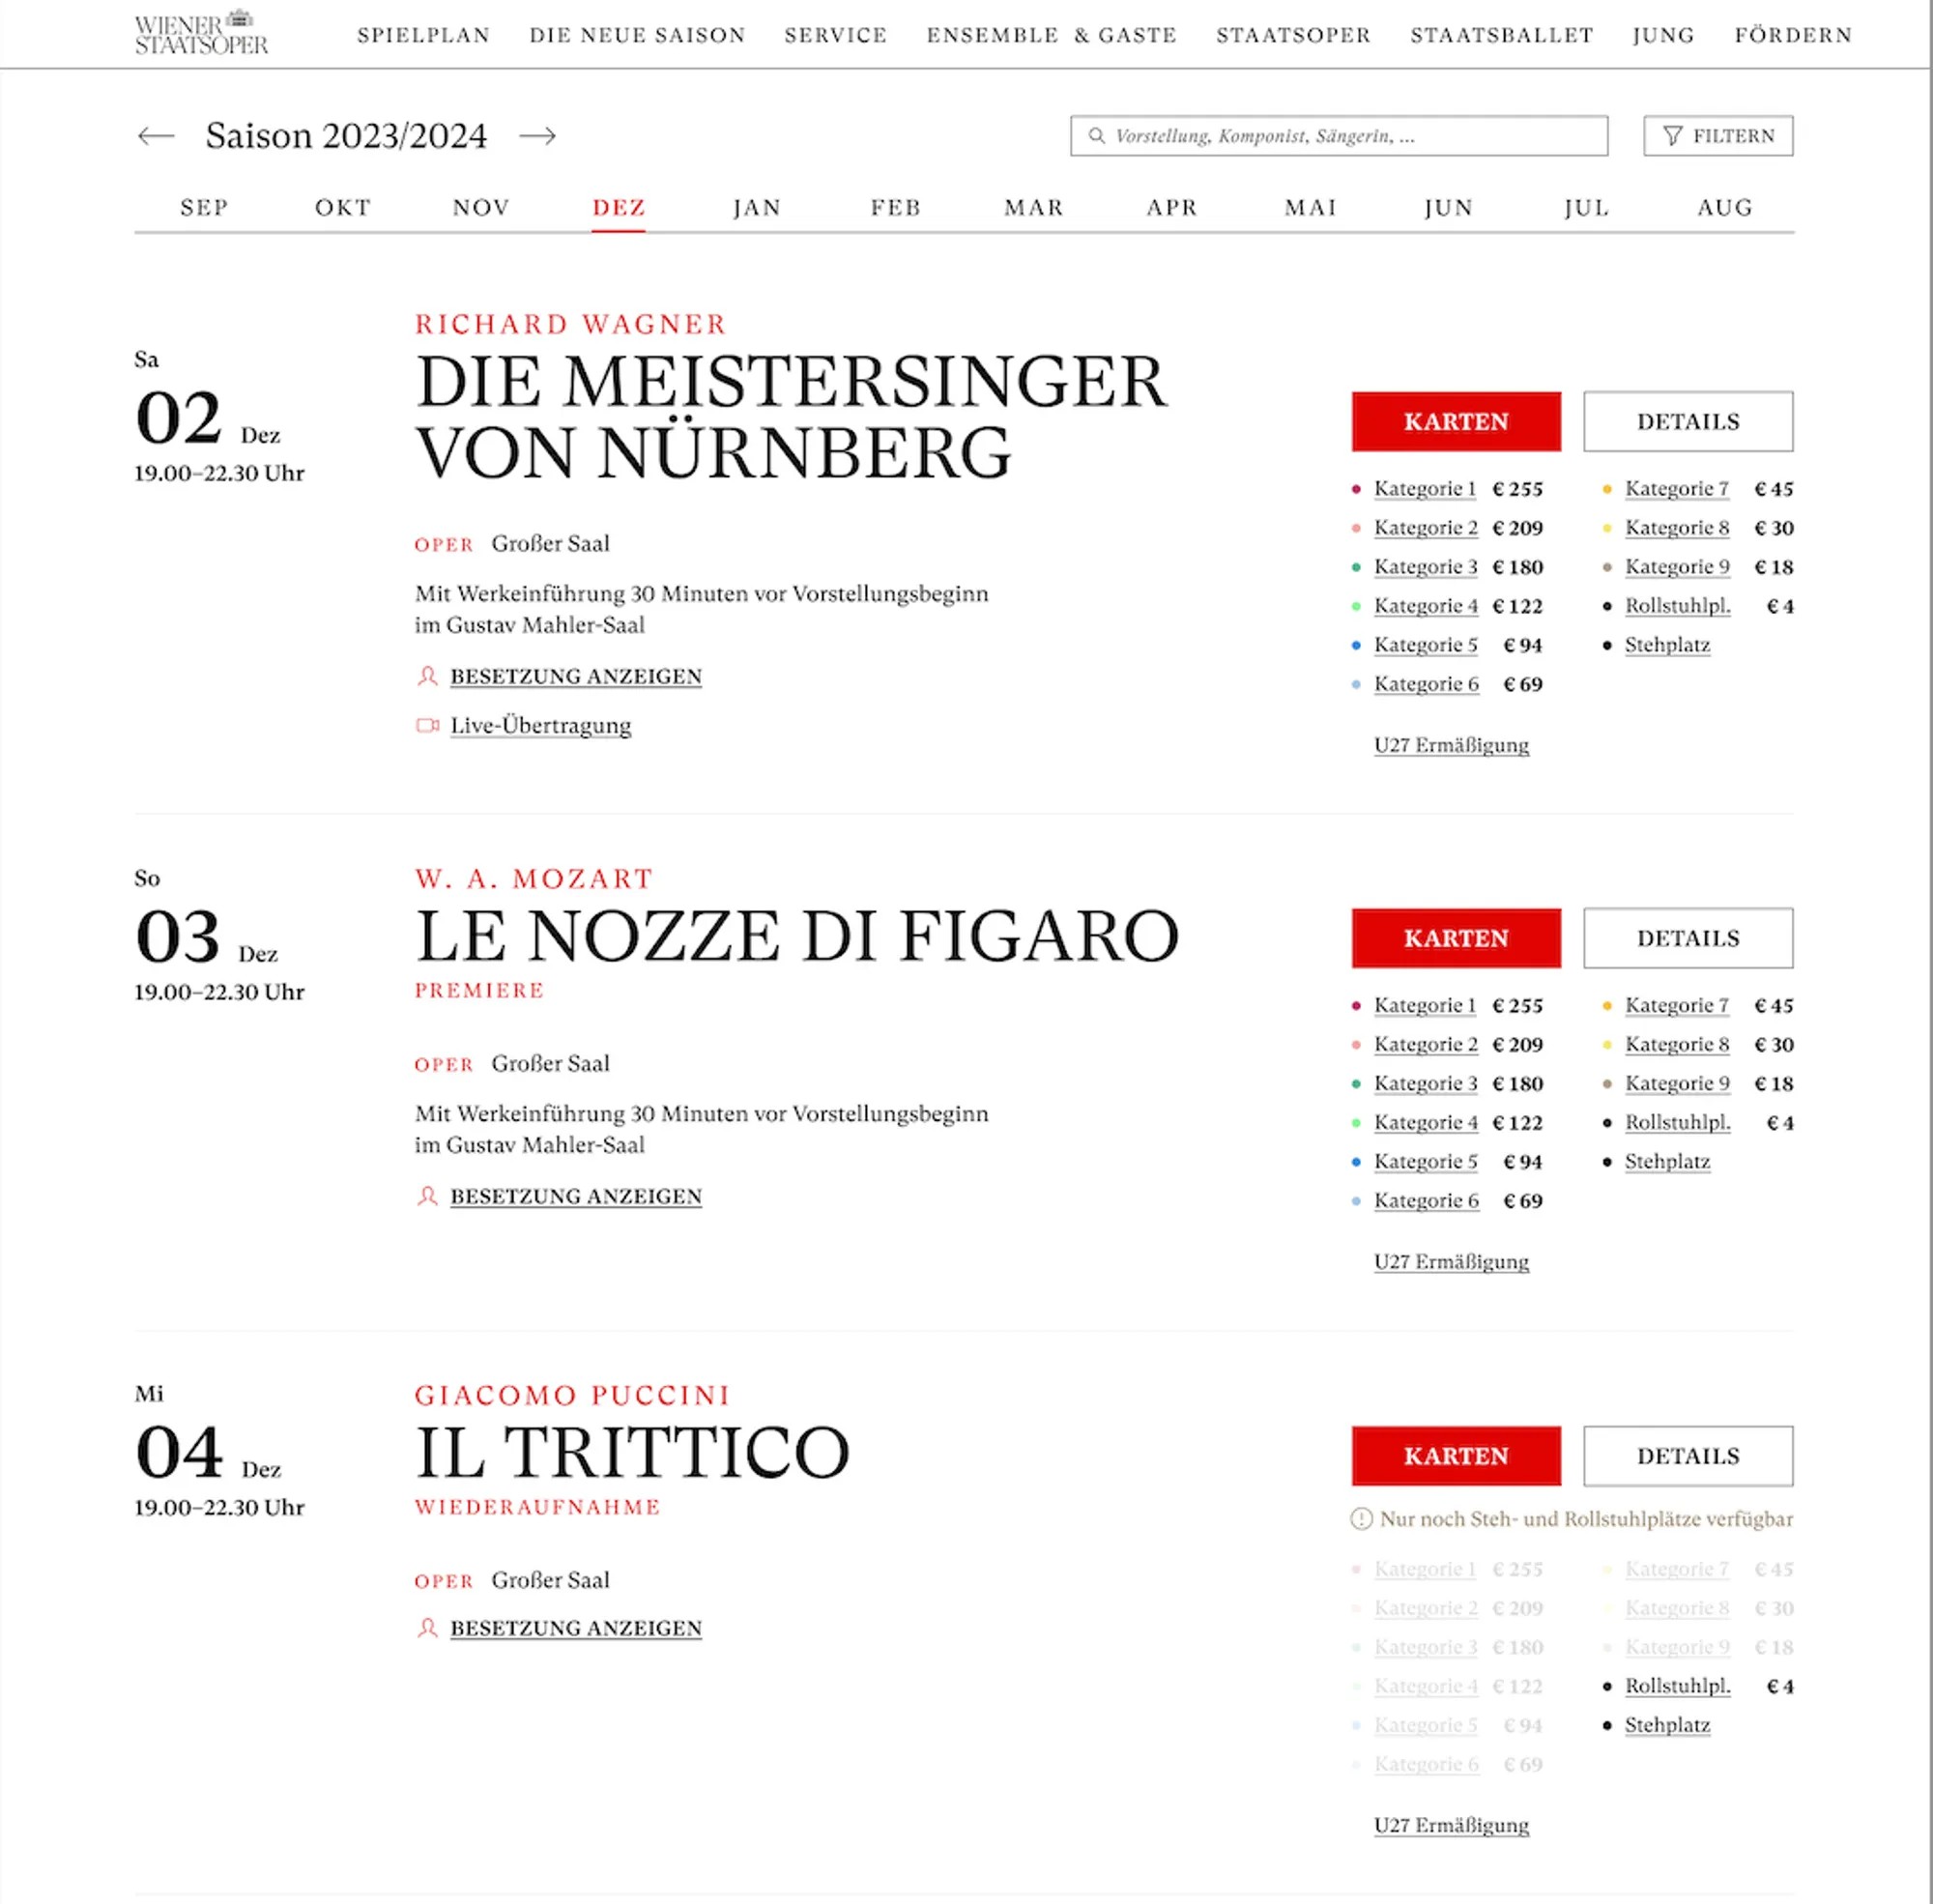 Screenshot des Spielplanes Kalenderansicht Saison 2023/24
Die Meistersinger von Nürnberg, Le Nozze di Figaro, Il Trittico